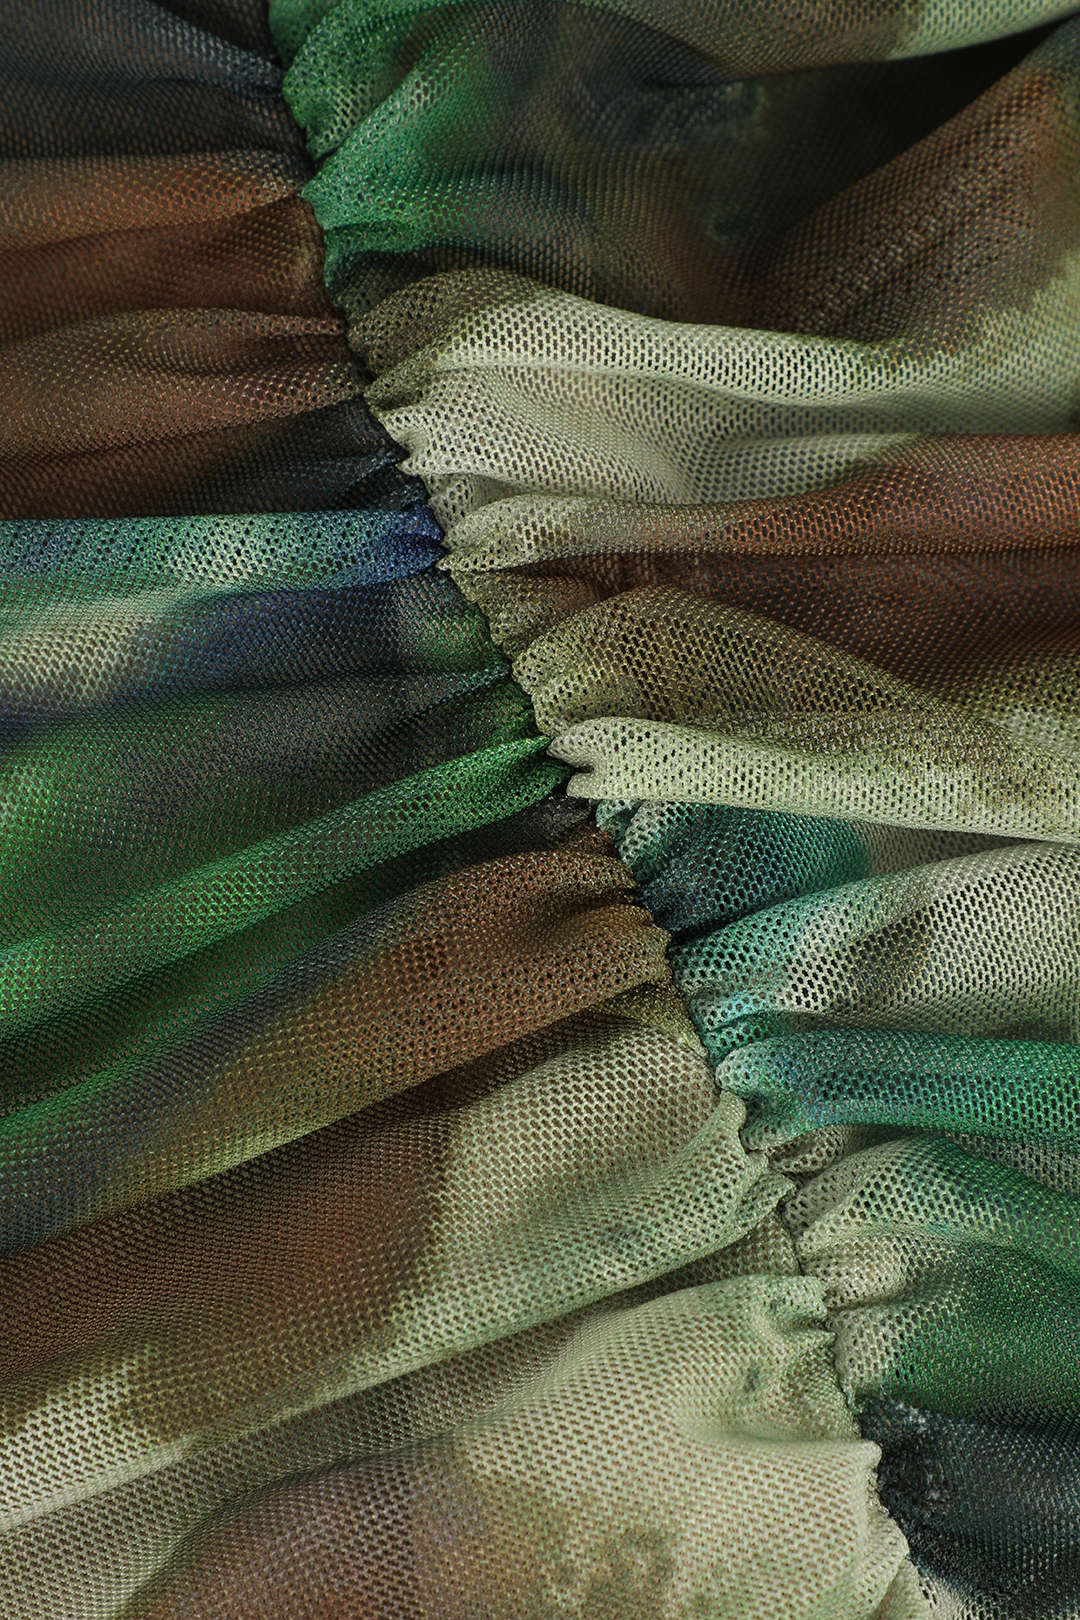 Abstract Print Sheer Mesh Ruched Midi Dress